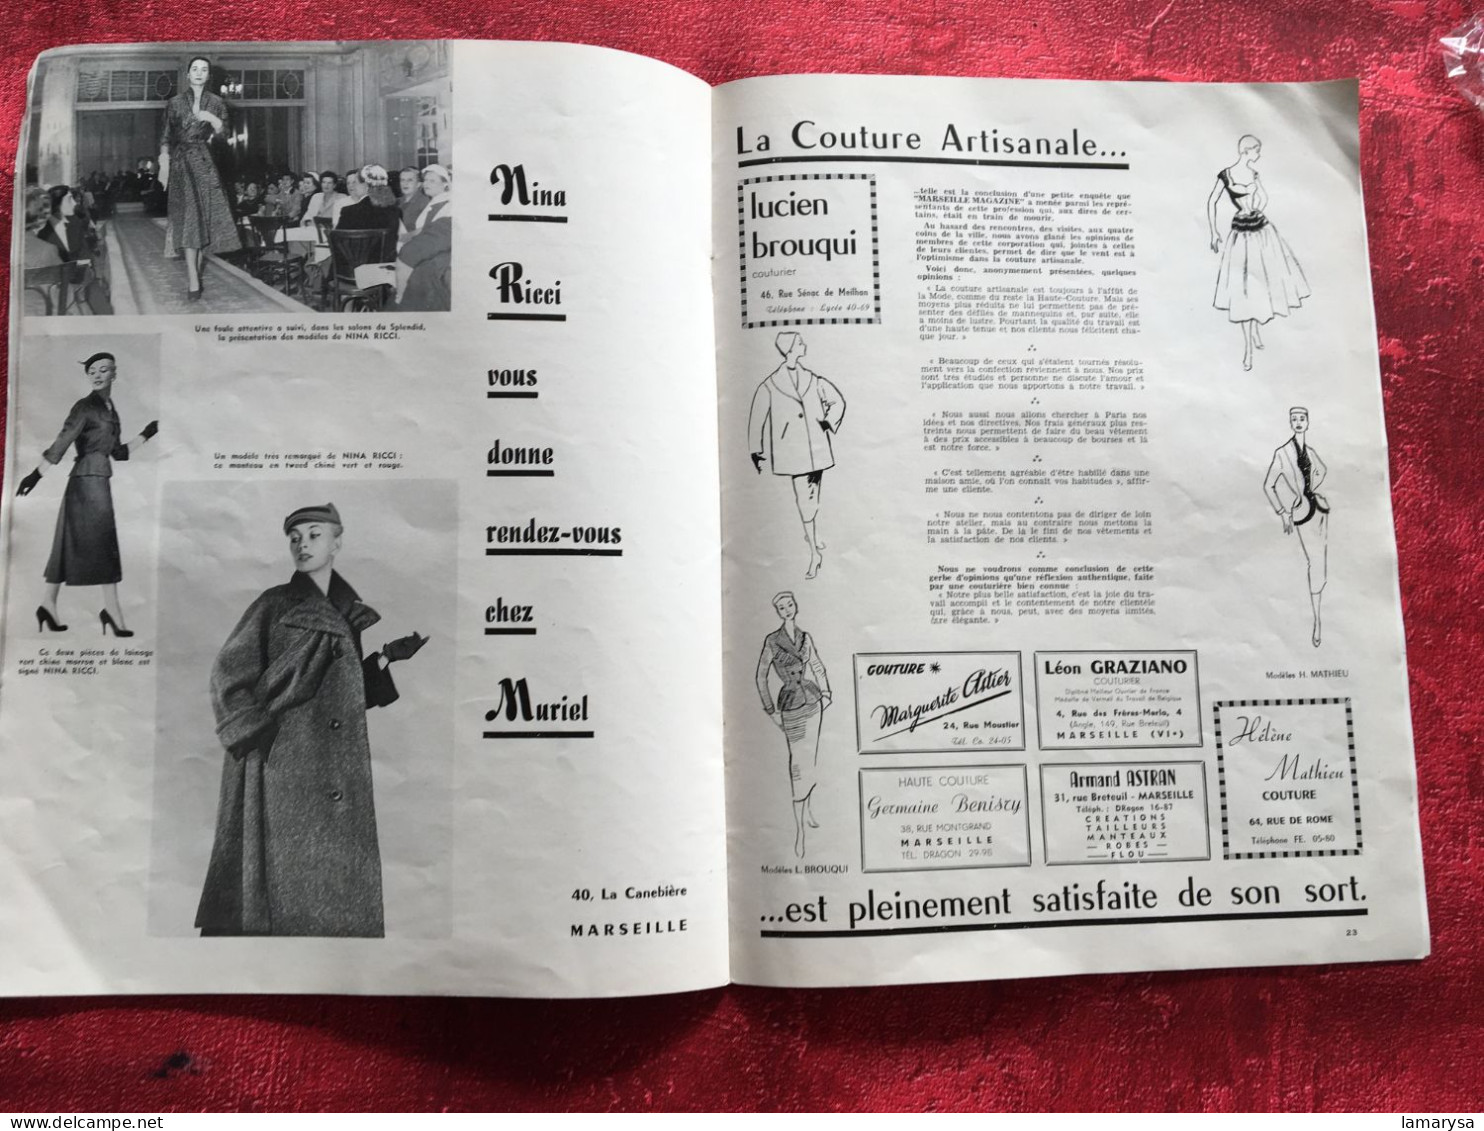 Marseille Magazine Revue en Français spécial Mode Hiver 1953/54 Livre coiffure-modèles-Biosthetique-Haute couture